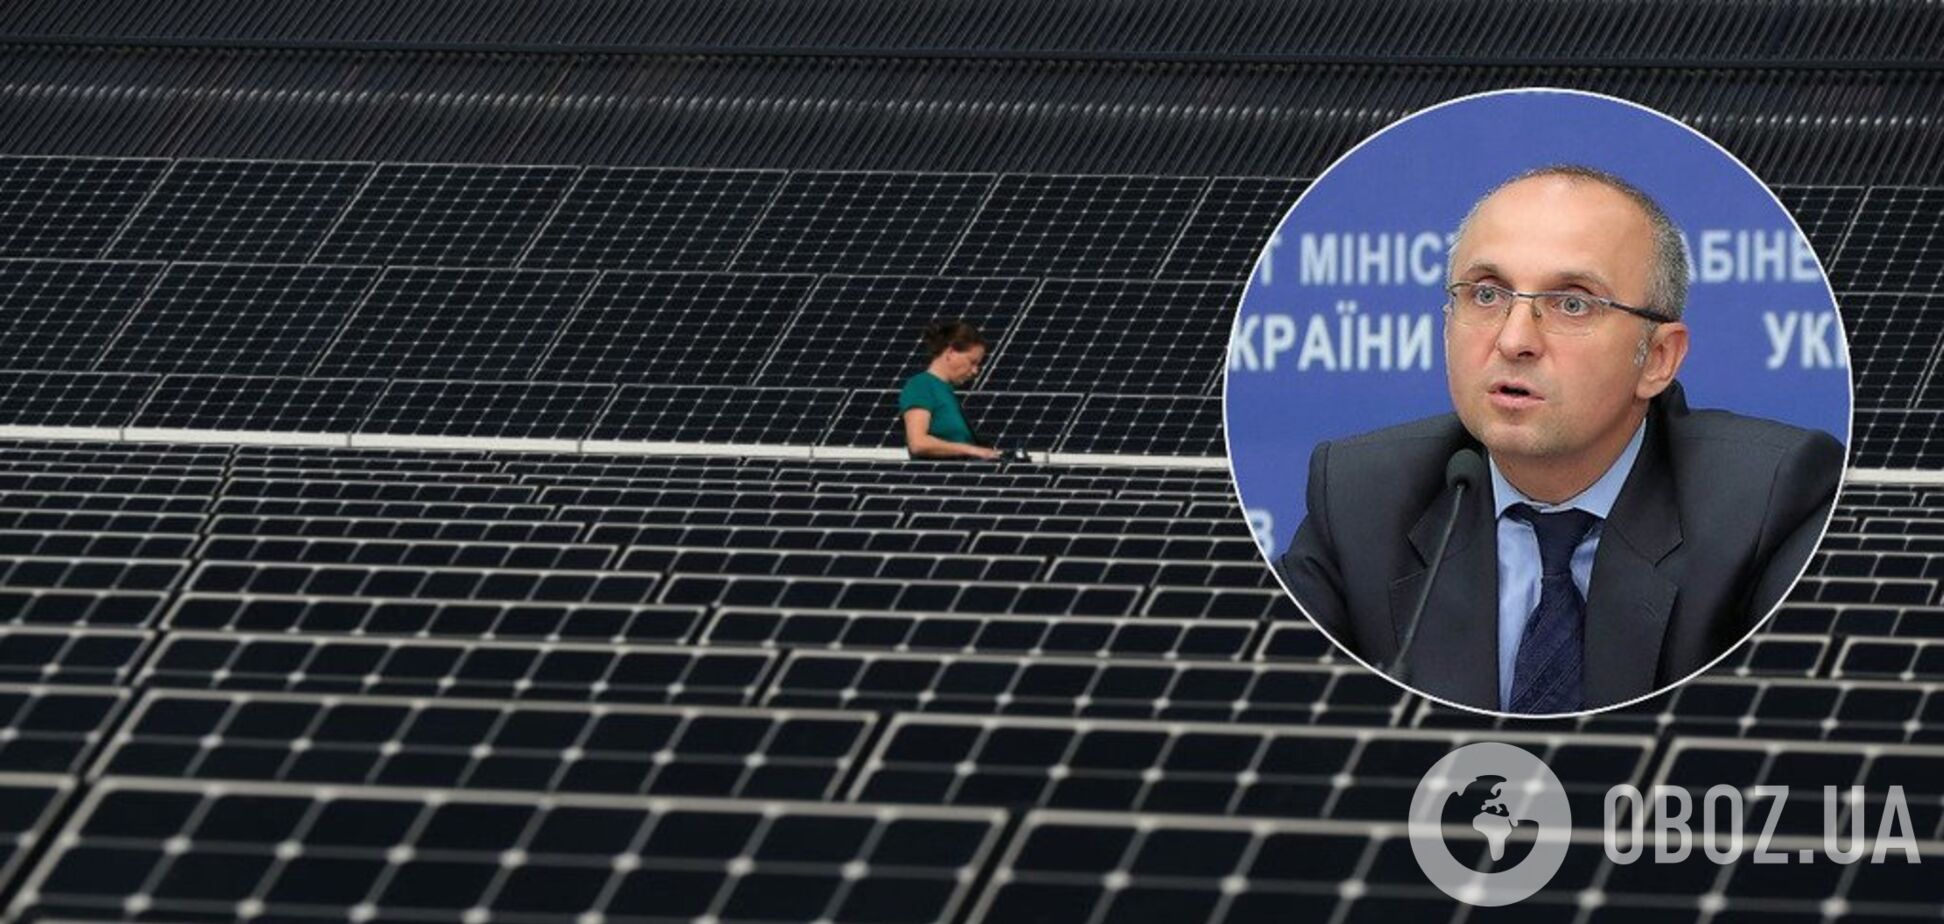 Миллиардные вливания: в правительстве озвучили приток инвестиций в 'зеленую' энергетику Украины